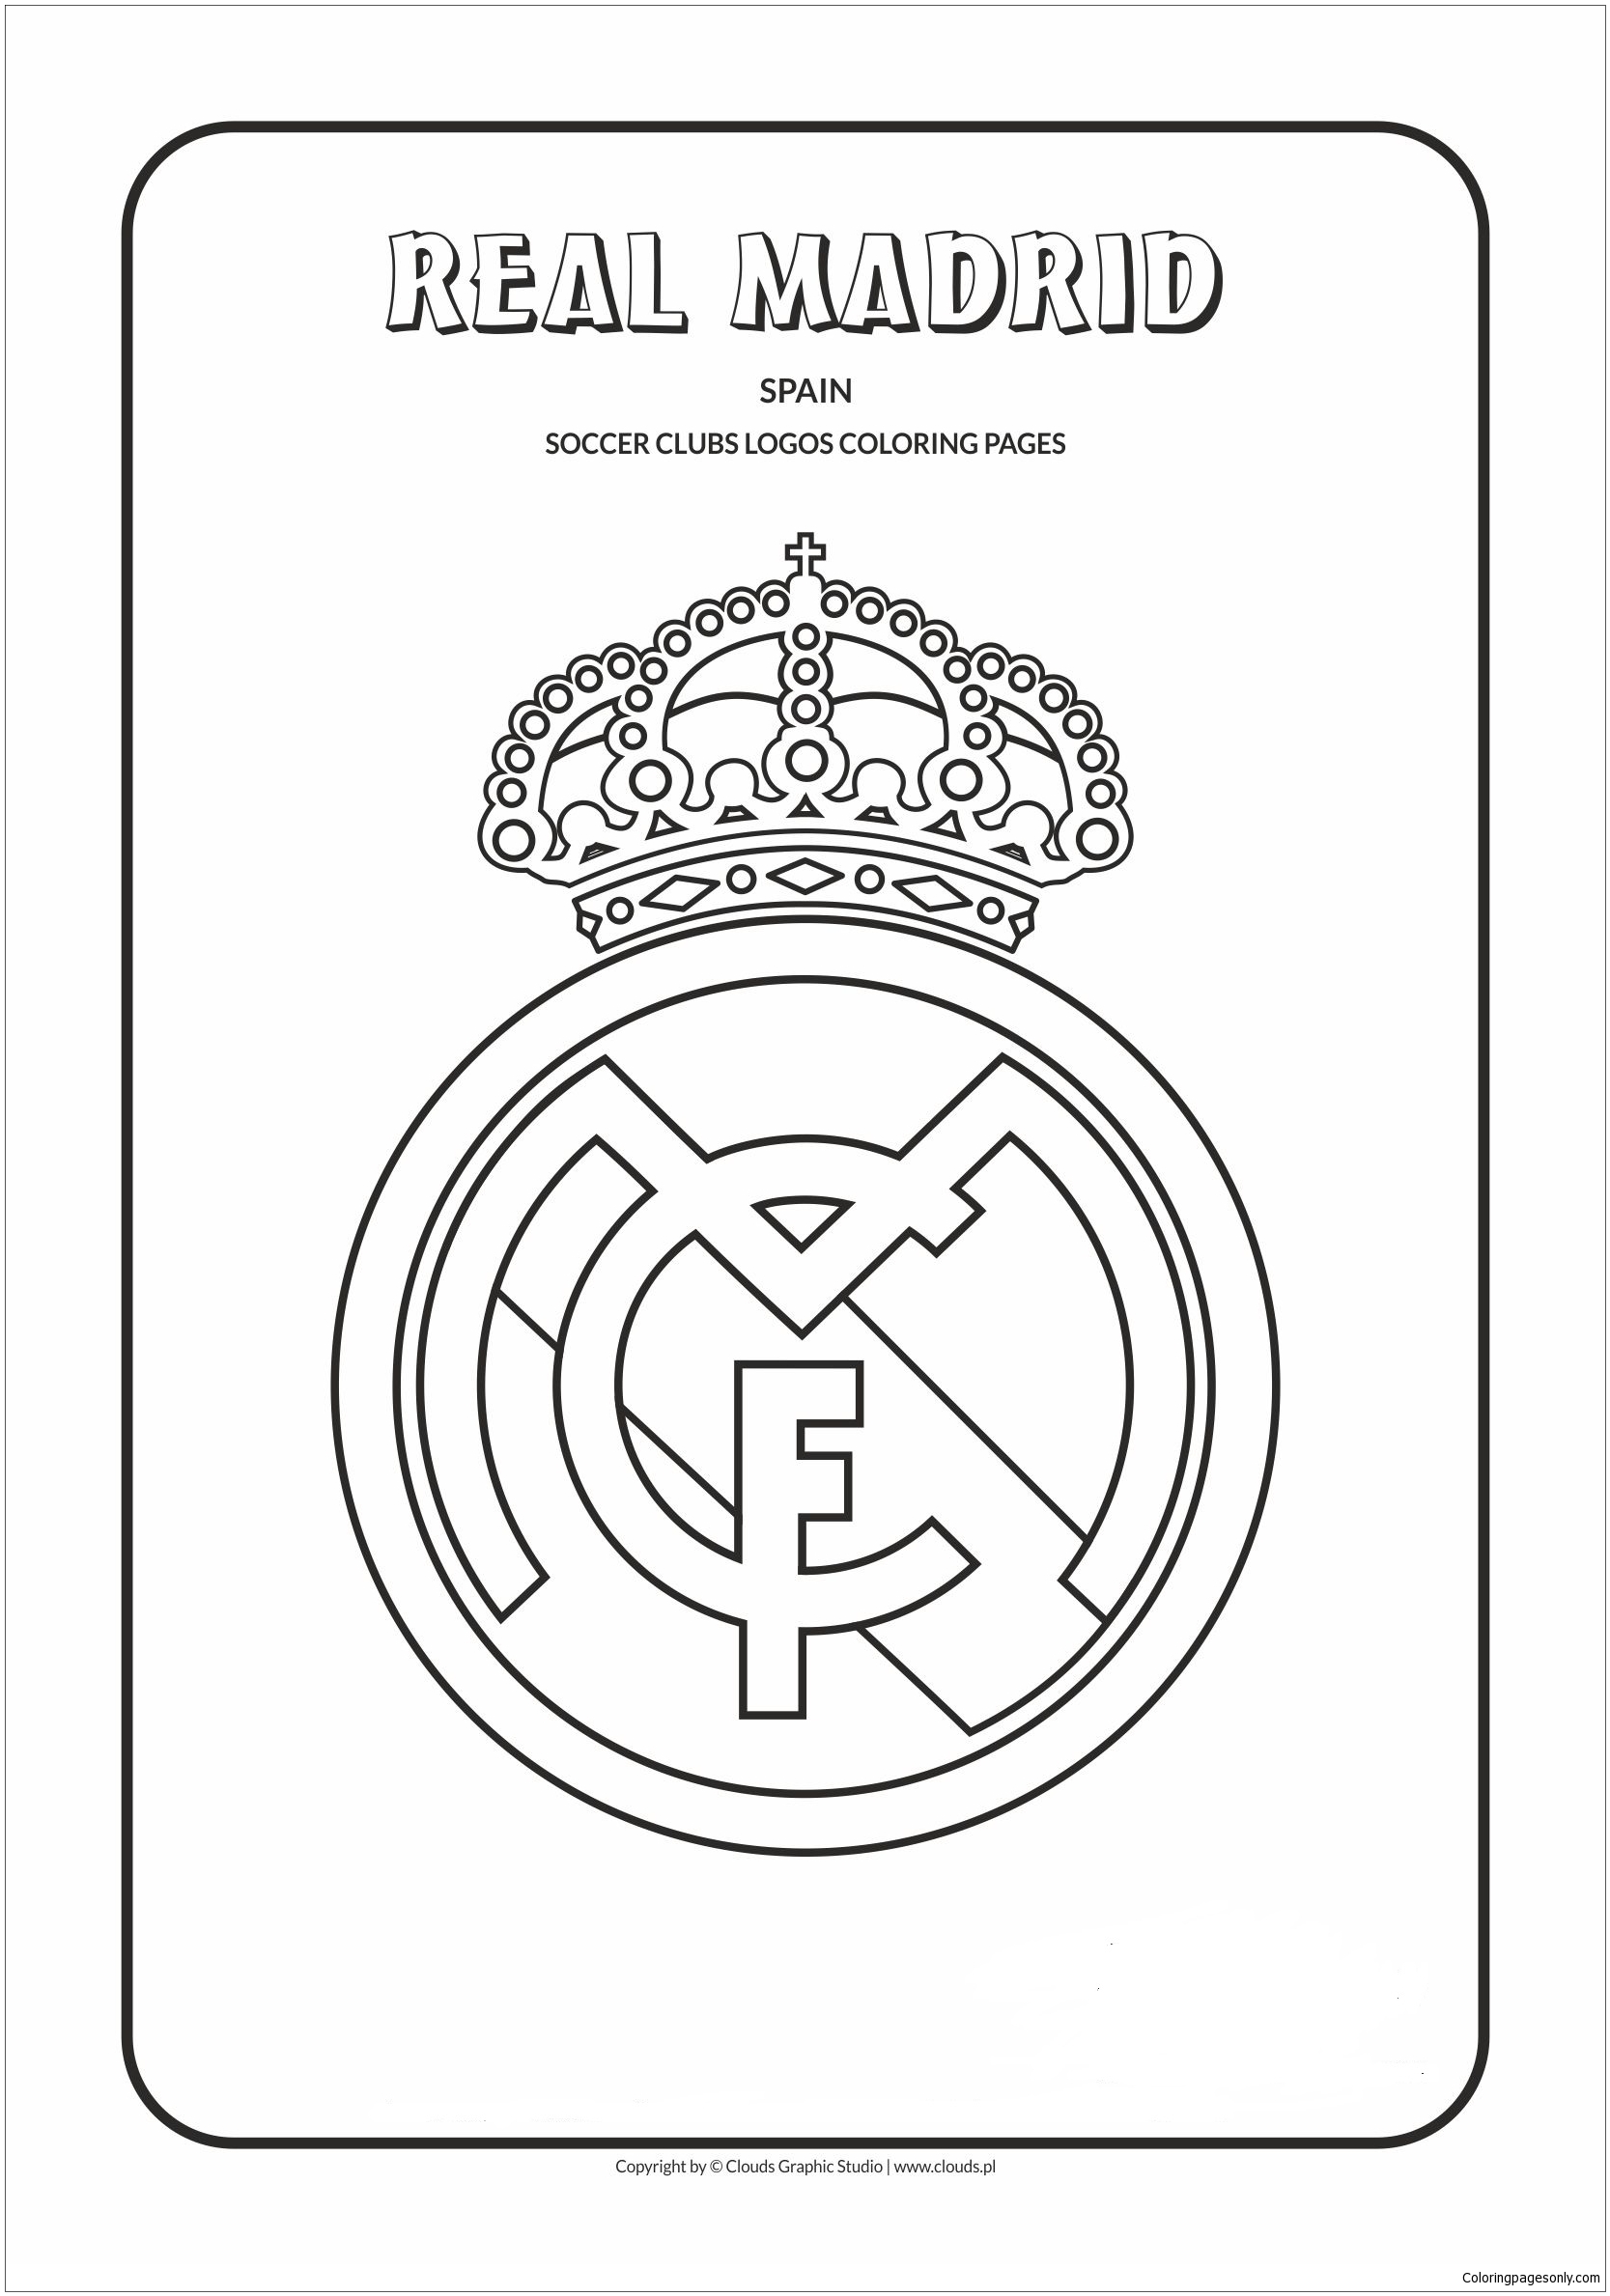 Real Madrid dos logotipos da equipe espanhola La Liga